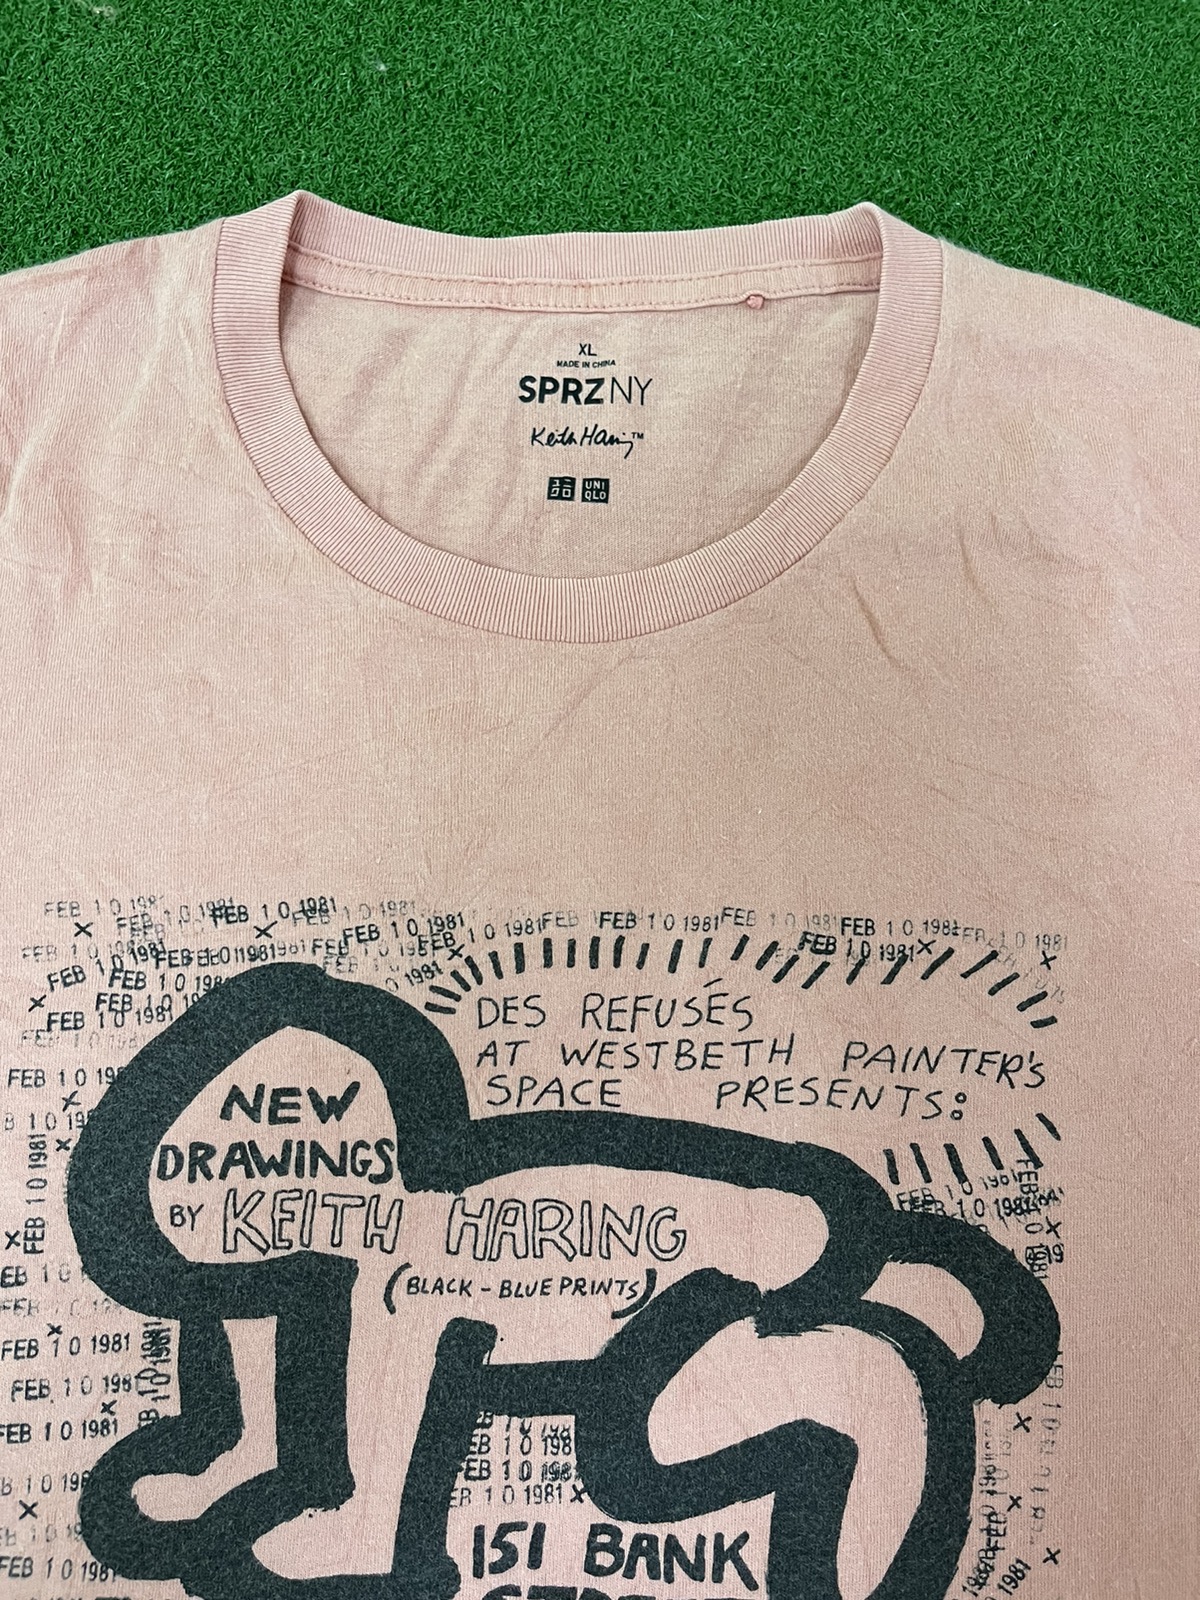 Jason - Uniqlo Keith Haring Party Of Life Tee shirt / Eva / Murakami - 6